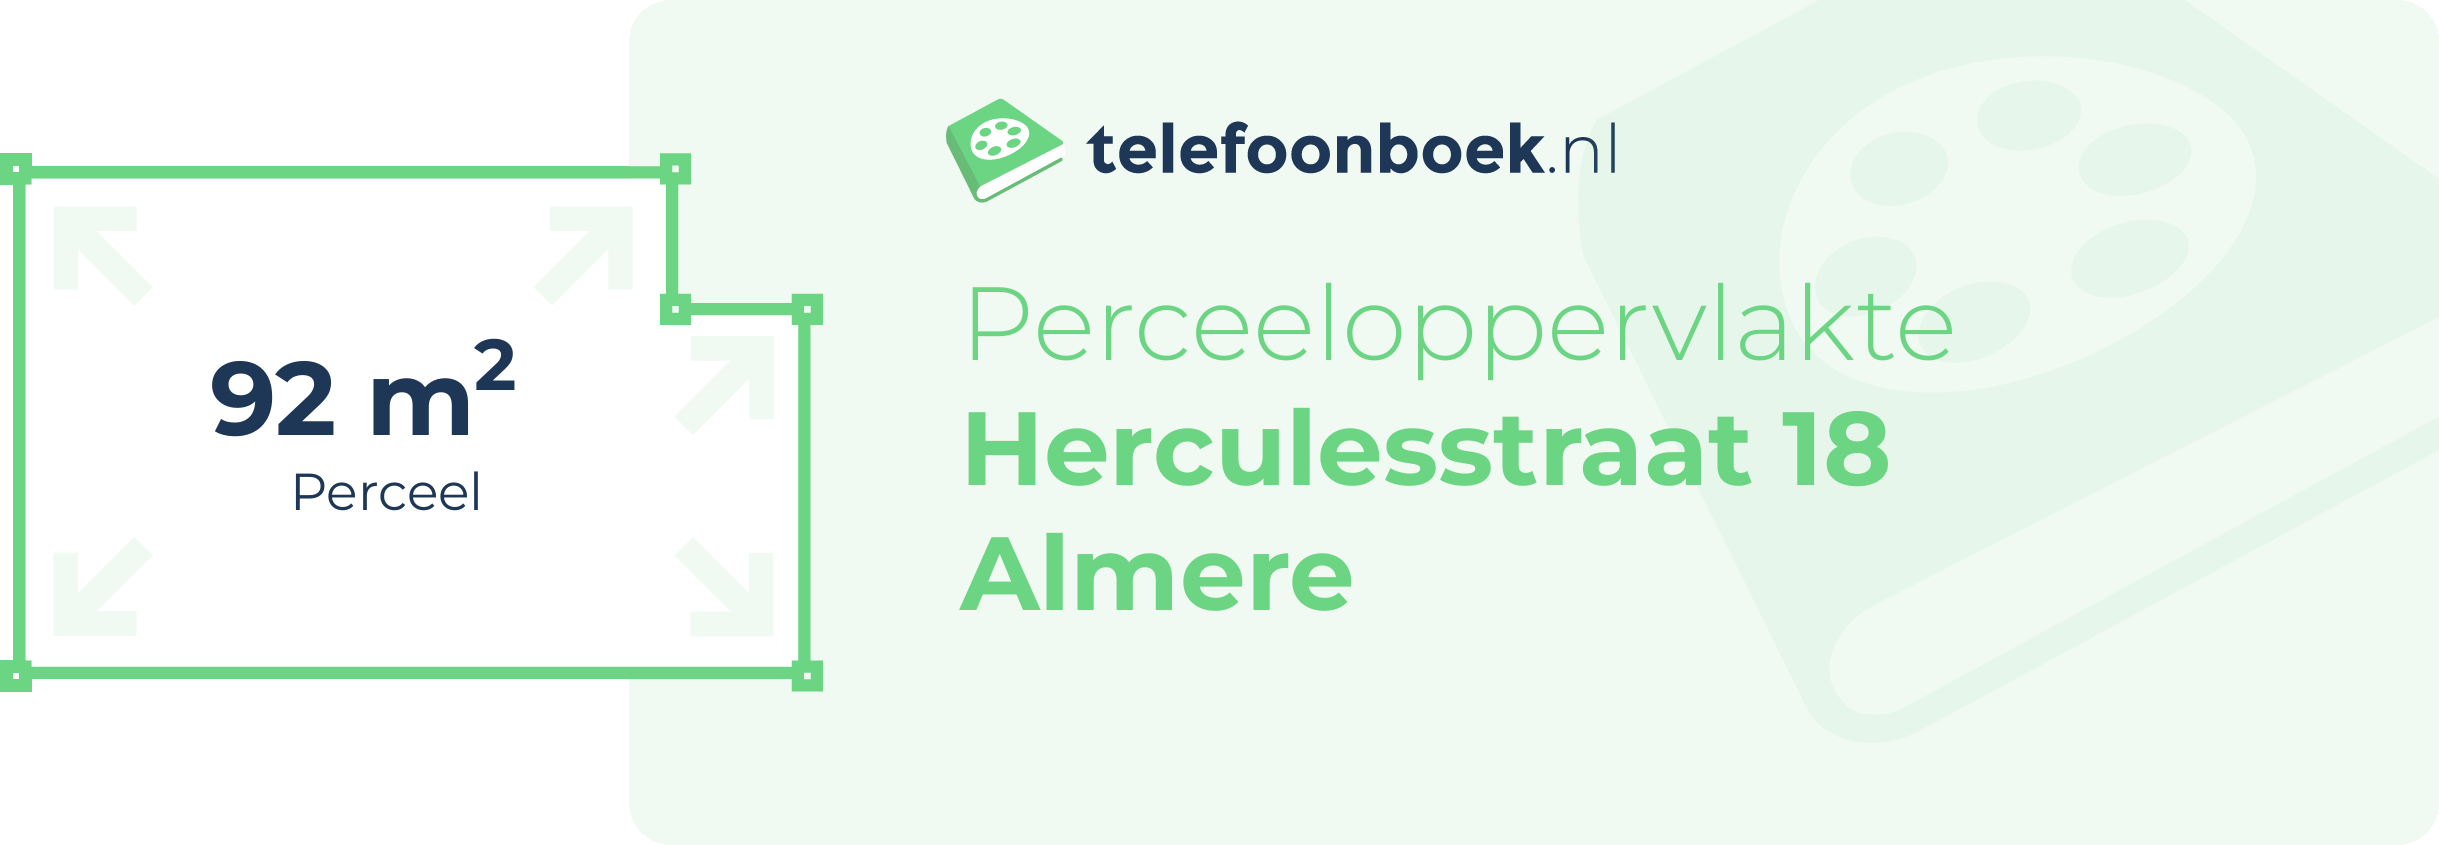 Perceeloppervlakte Herculesstraat 18 Almere